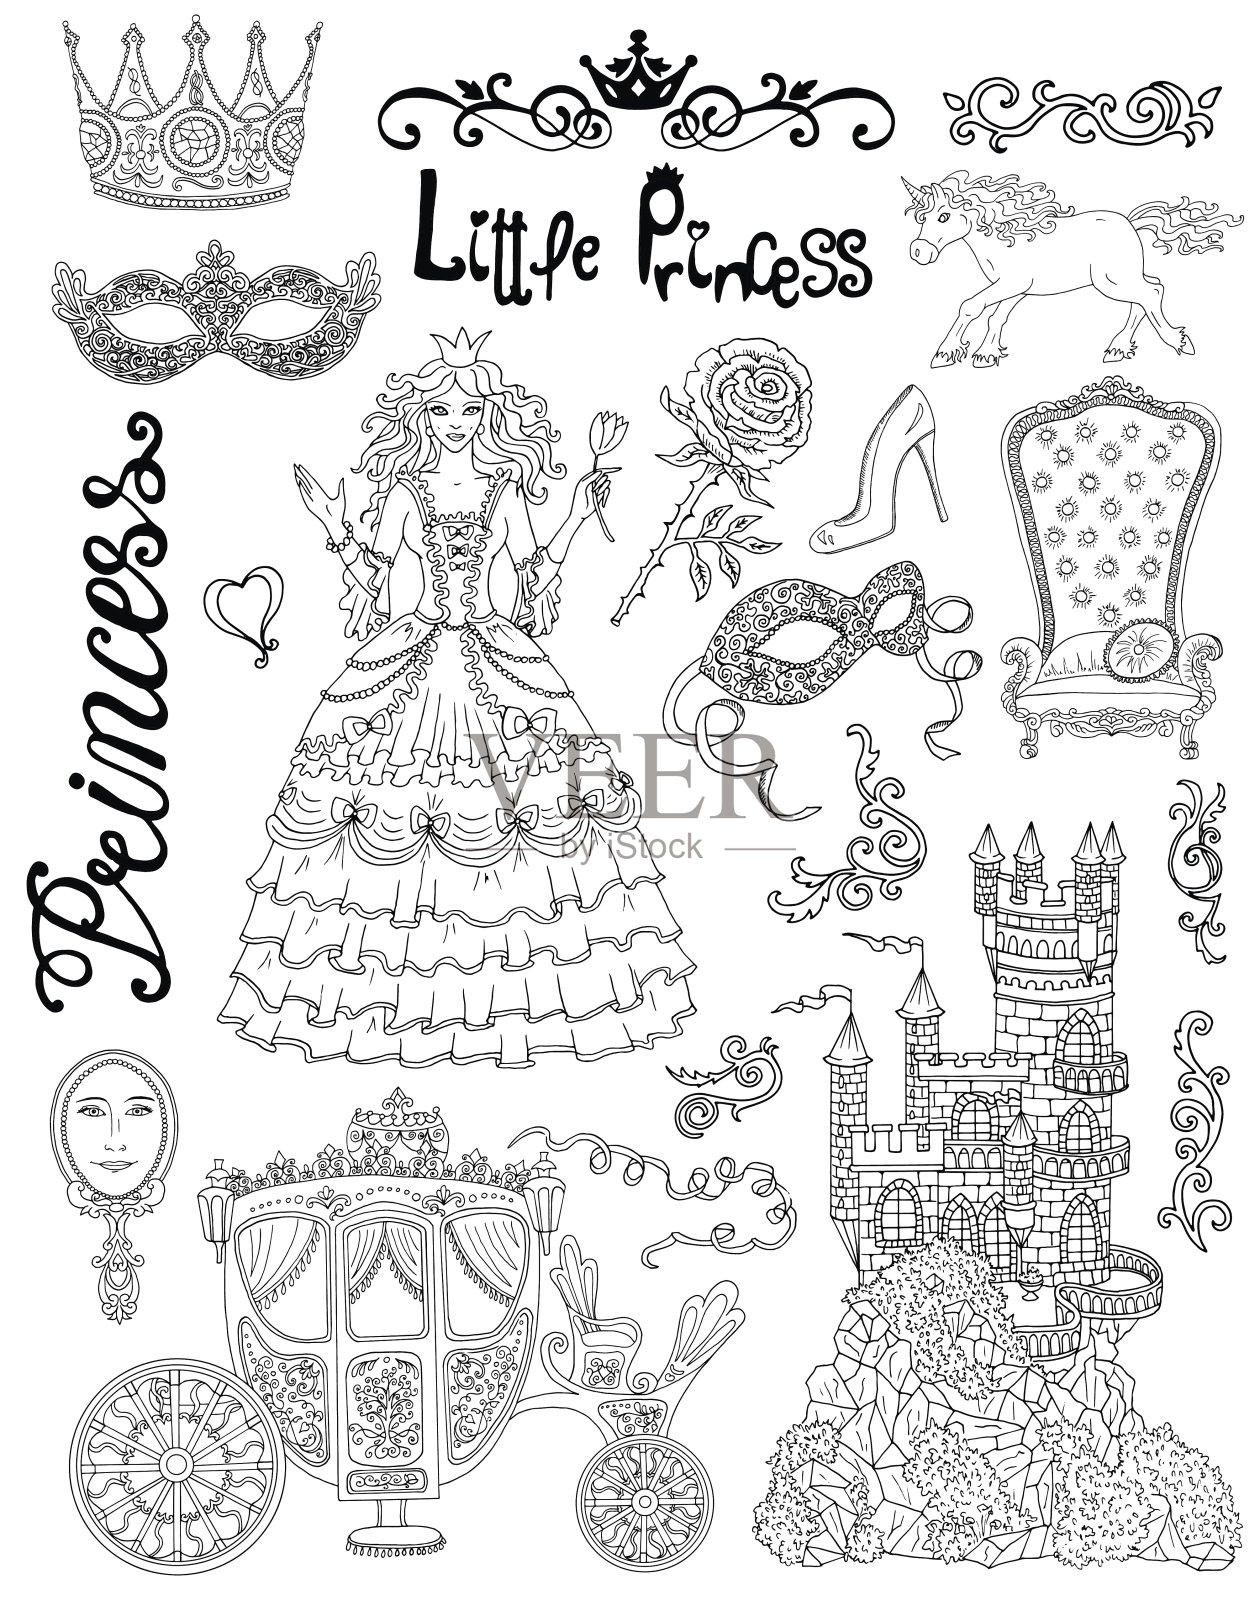 线条艺术涂鸦与公主配件和皇室概念插画图片素材